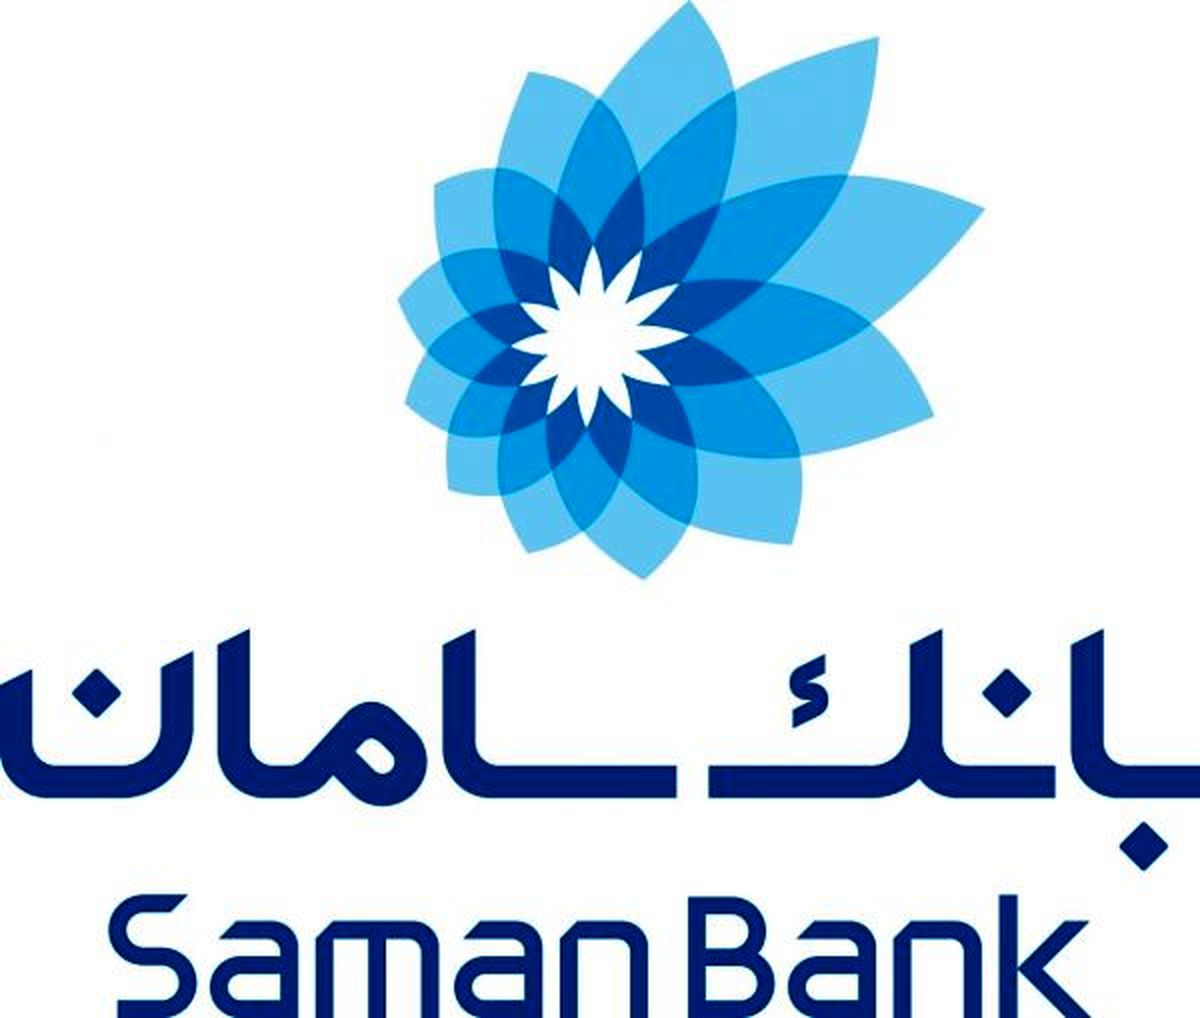 1000 میلیارد تومان اوراق گواهی سپرده بانک سامان به فروش رسید